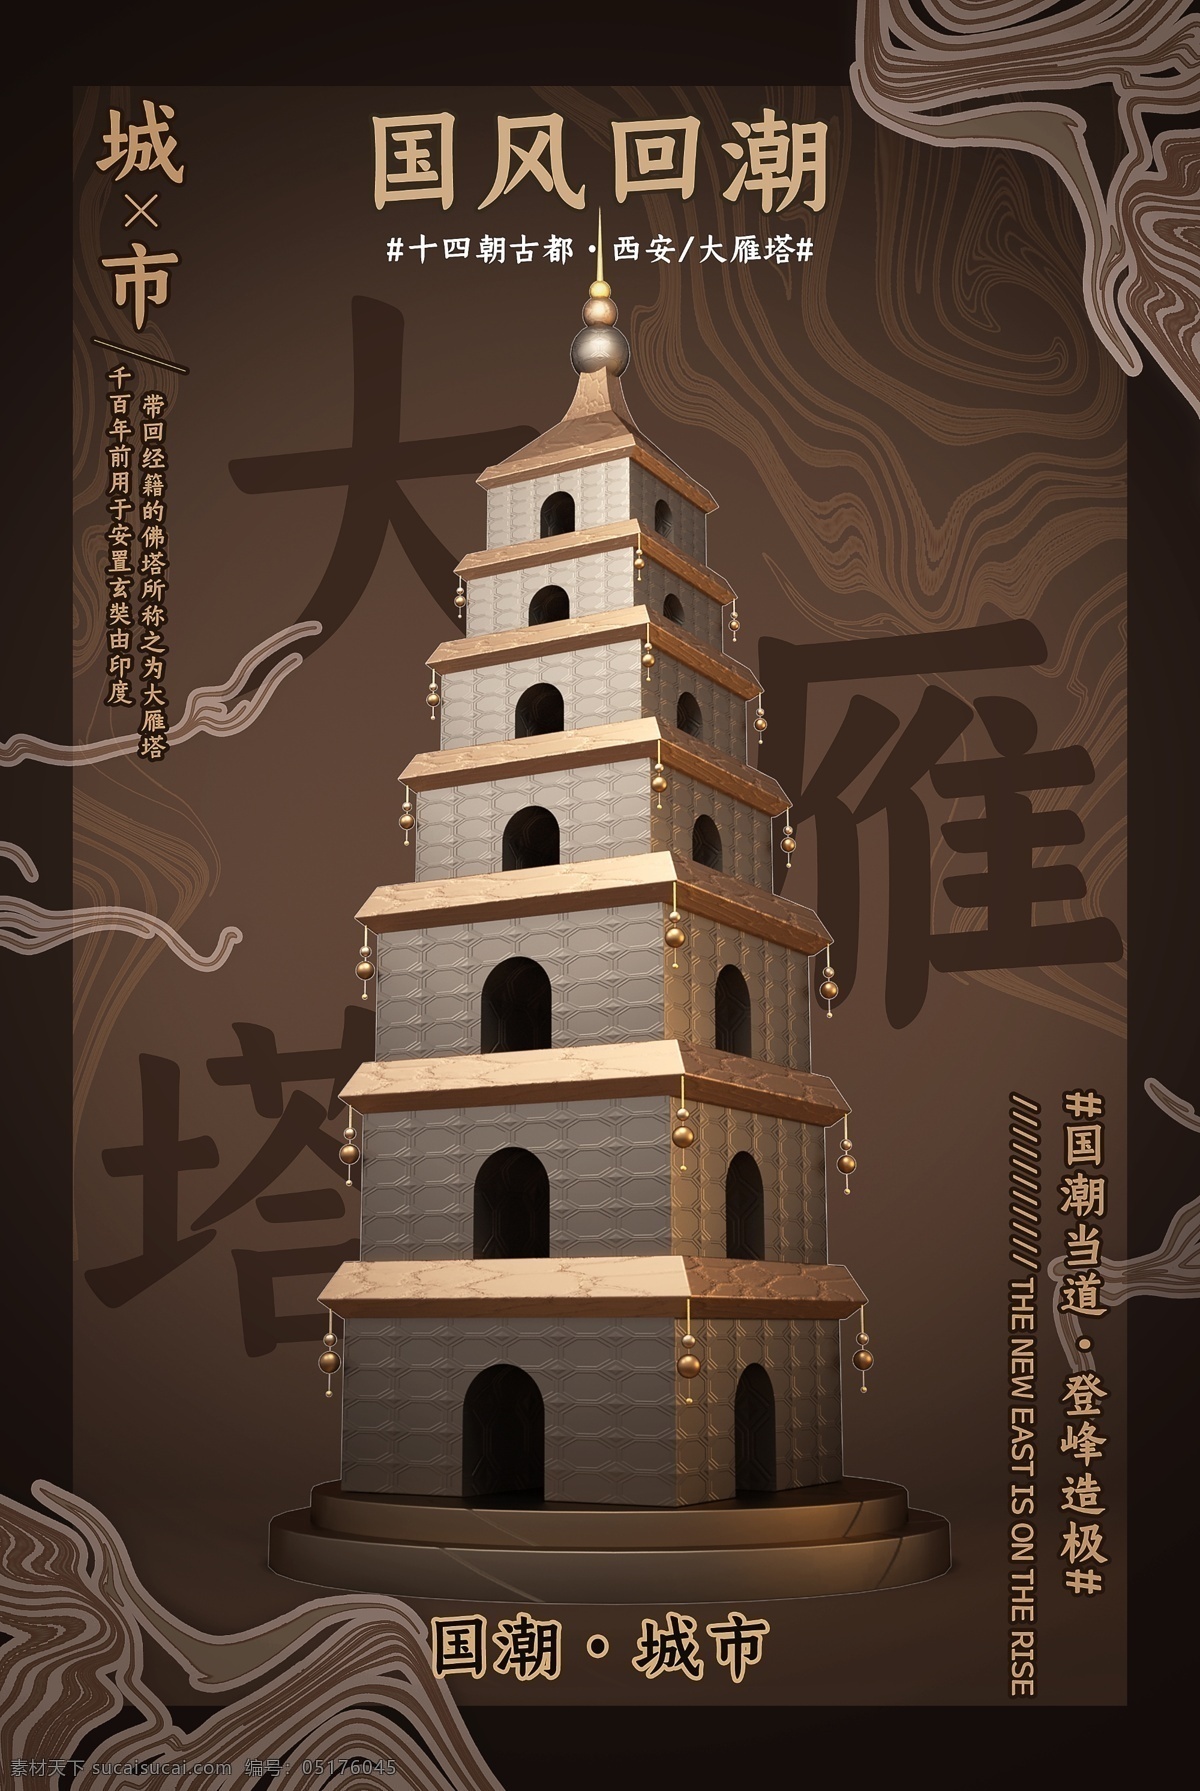 中式风格背景 传统中式 塔 佛塔 中式建筑 古建筑 中国古建筑 褐色 中国风 中式底纹 祥云 民国风 传统风格包装